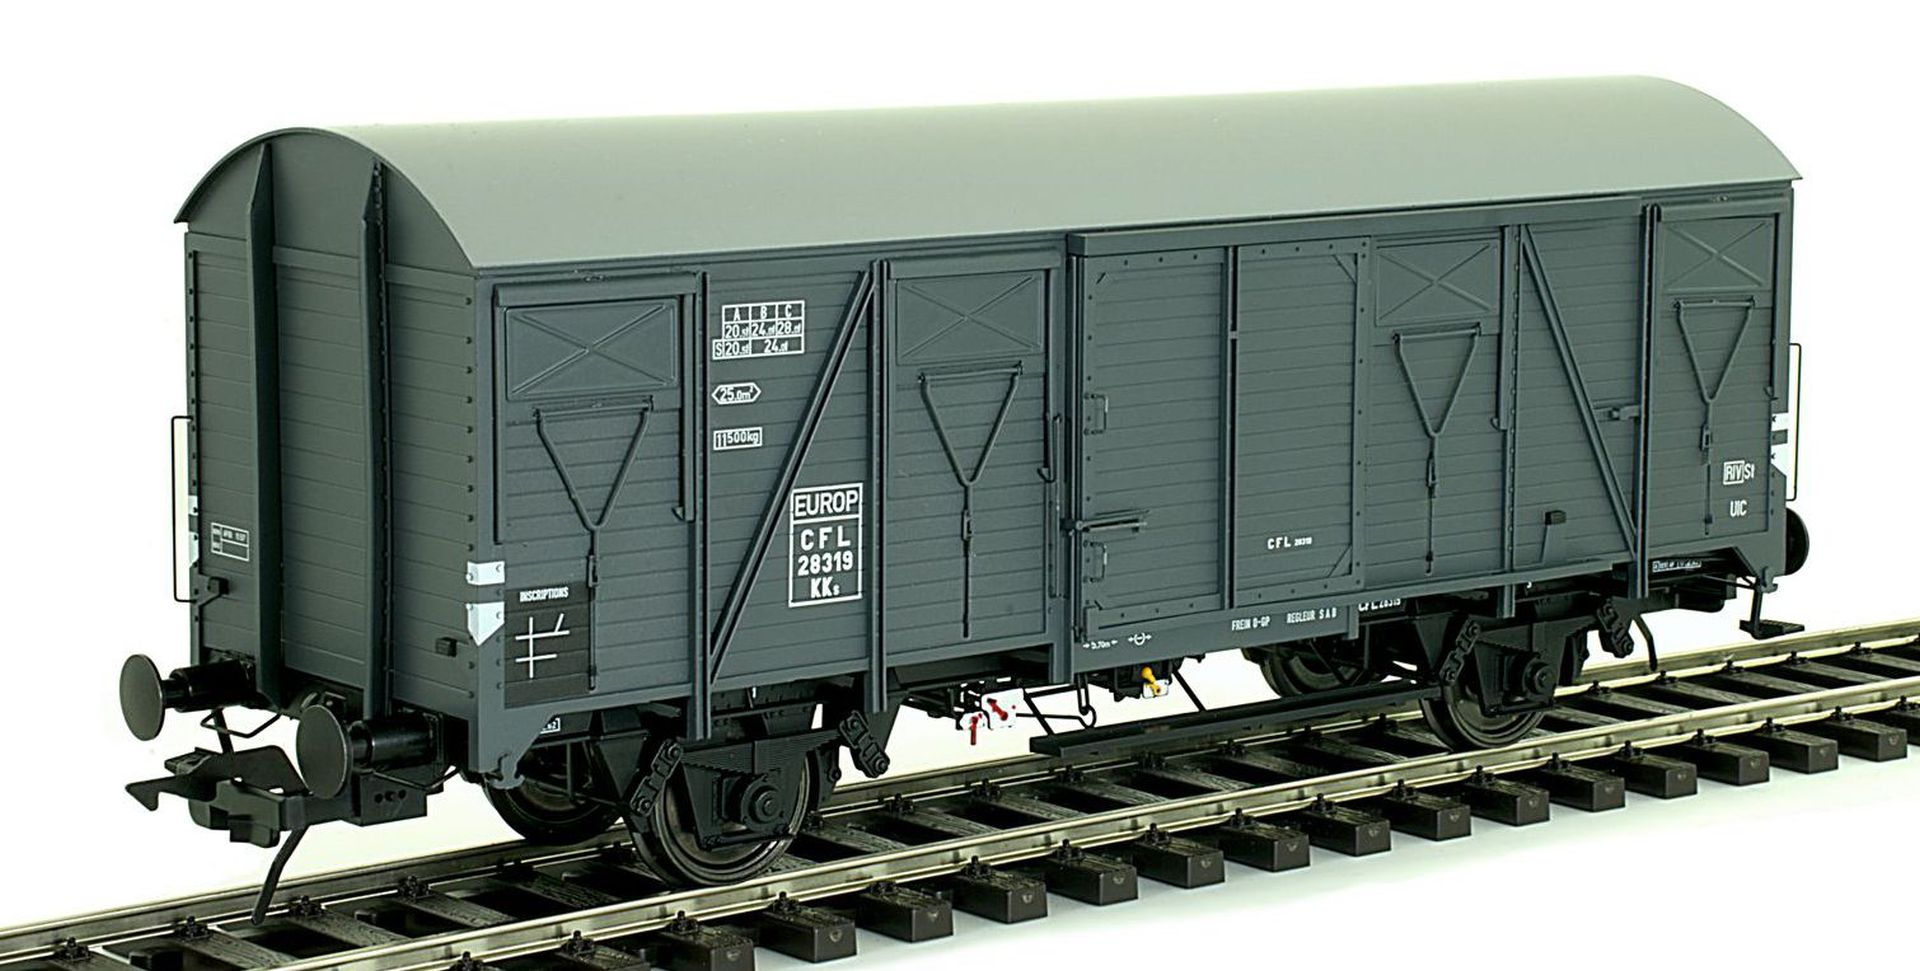 Lenz 42246-04 - Güterwagen K4, CFL, Ep.III, 28319